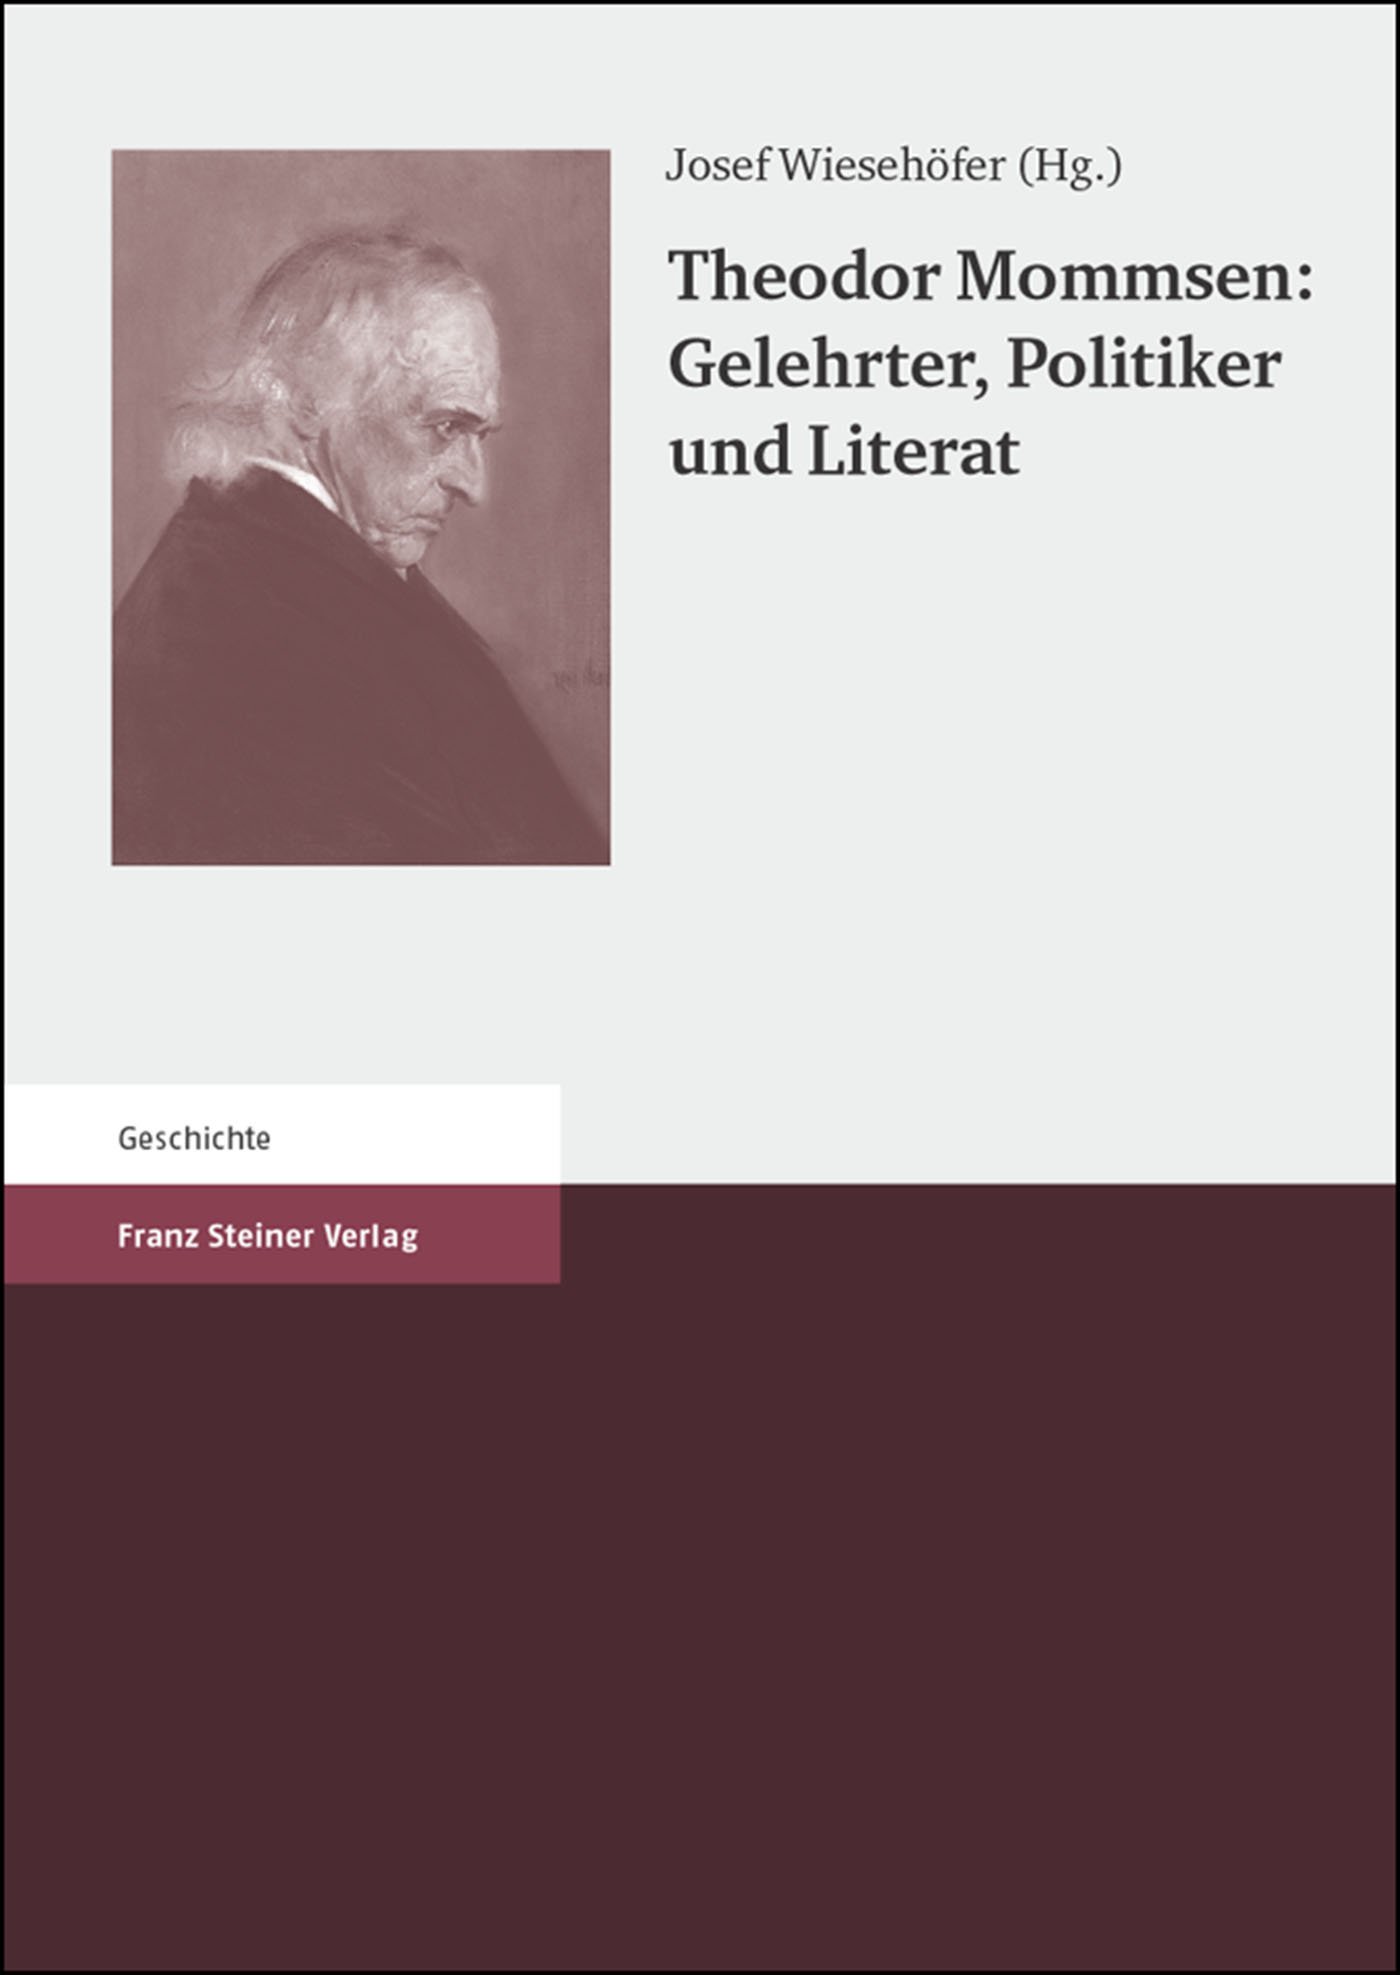 Theodor Mommsen: Gelehrter, Politiker und Literat